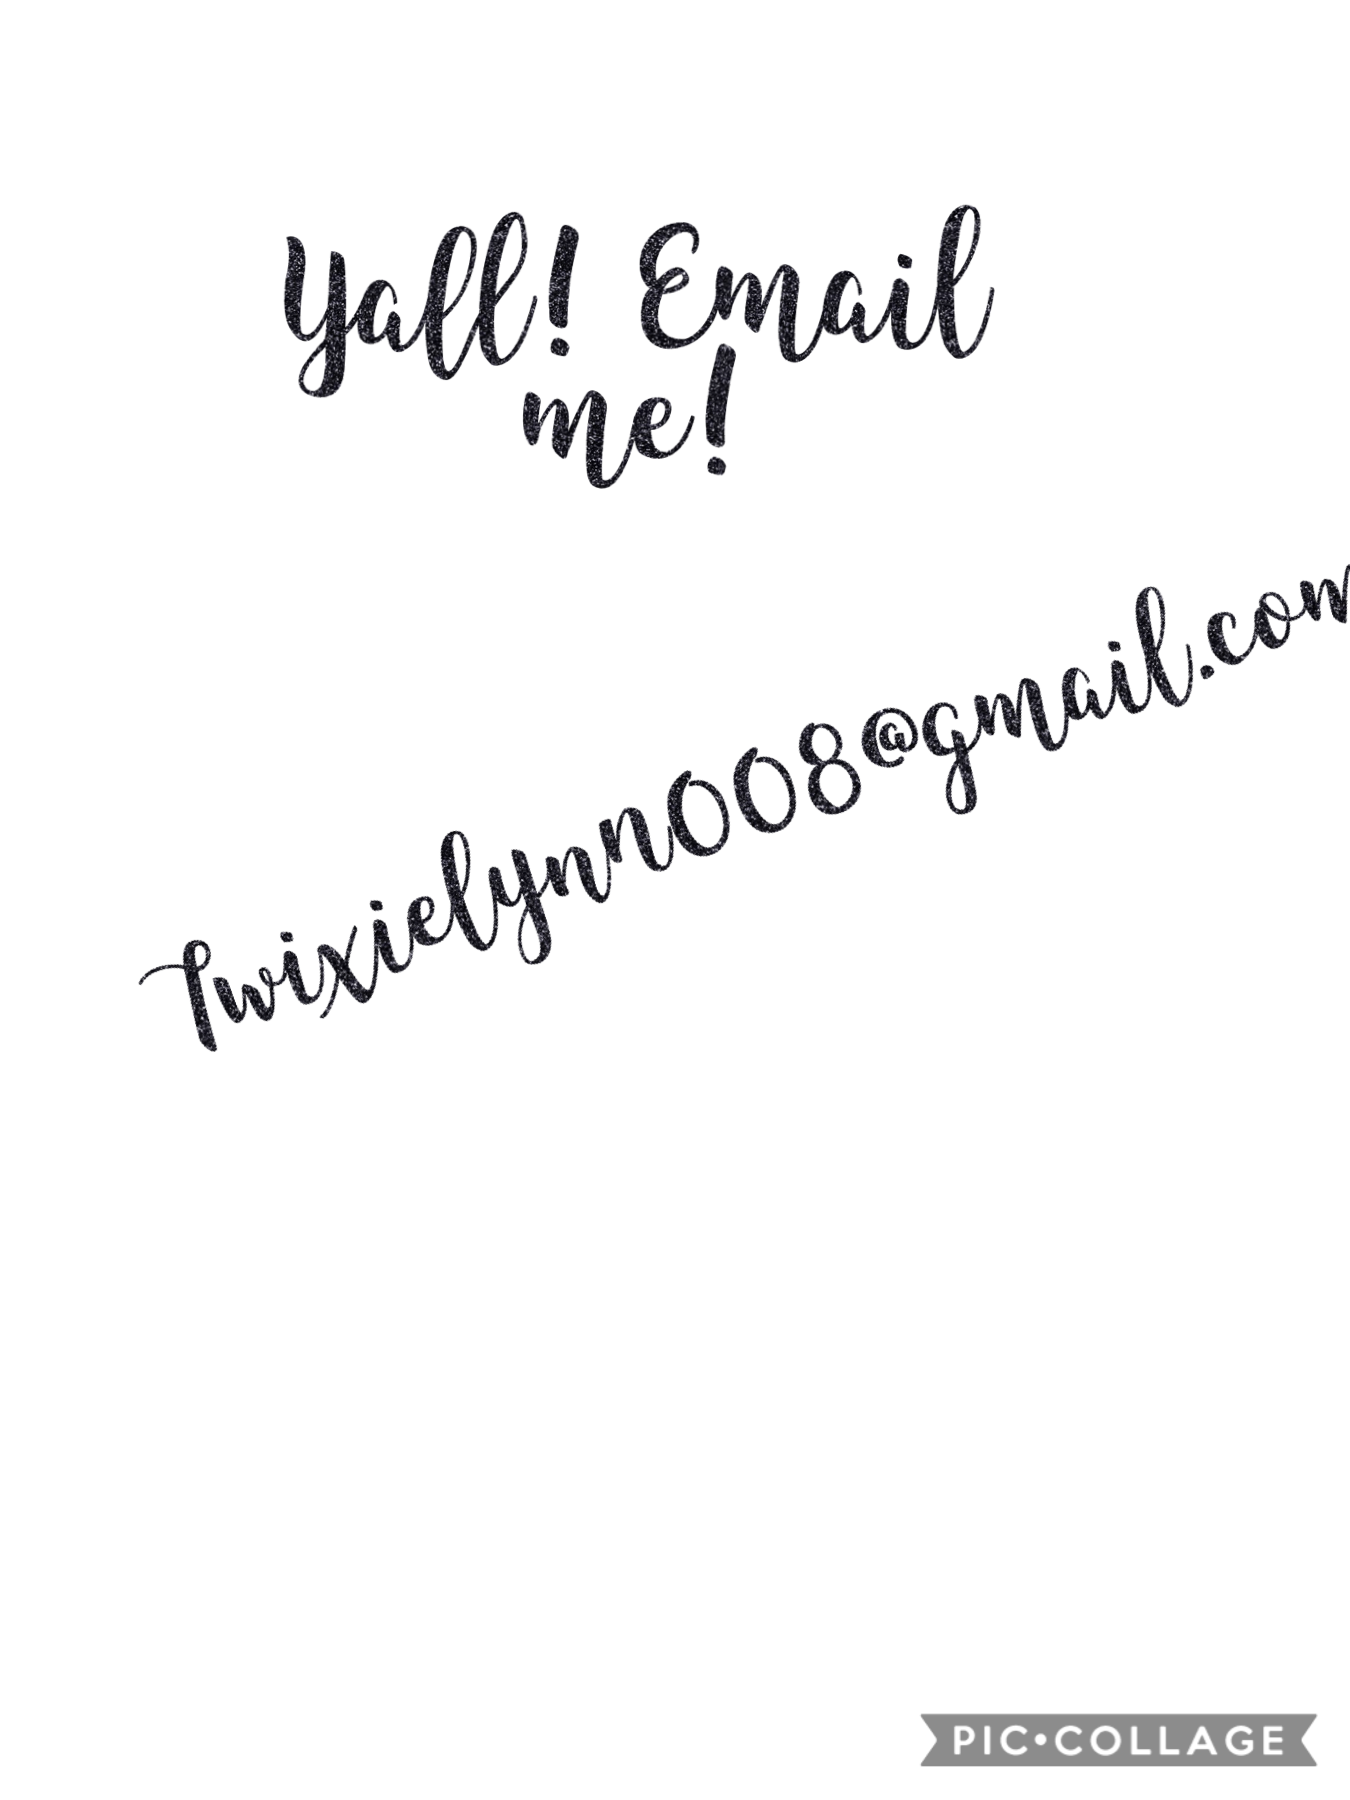 #emailme!